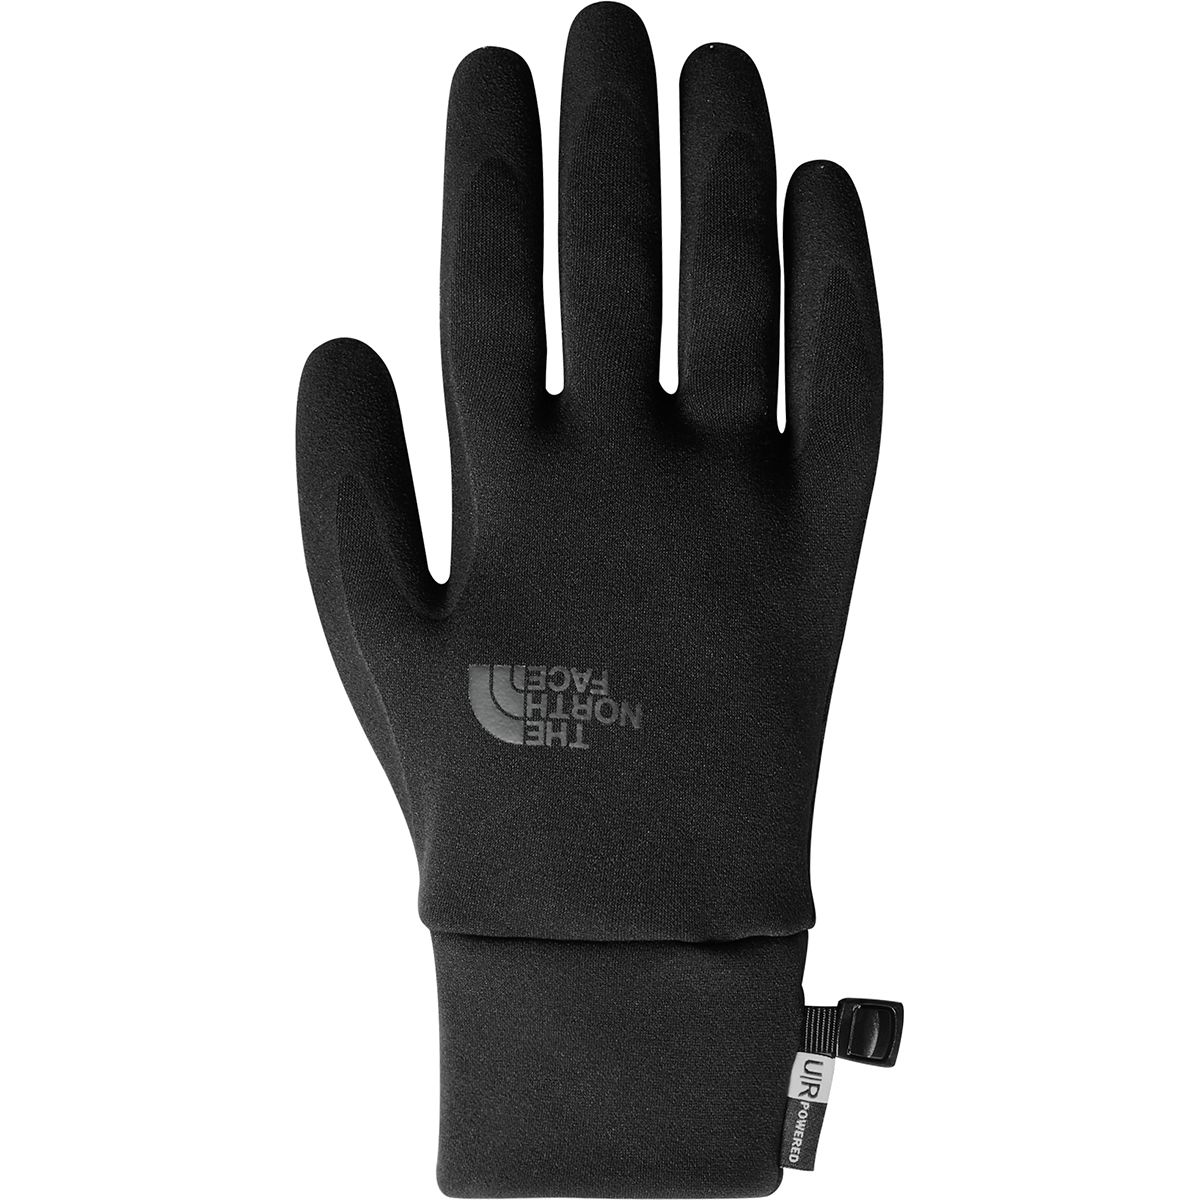 etip grip gloves